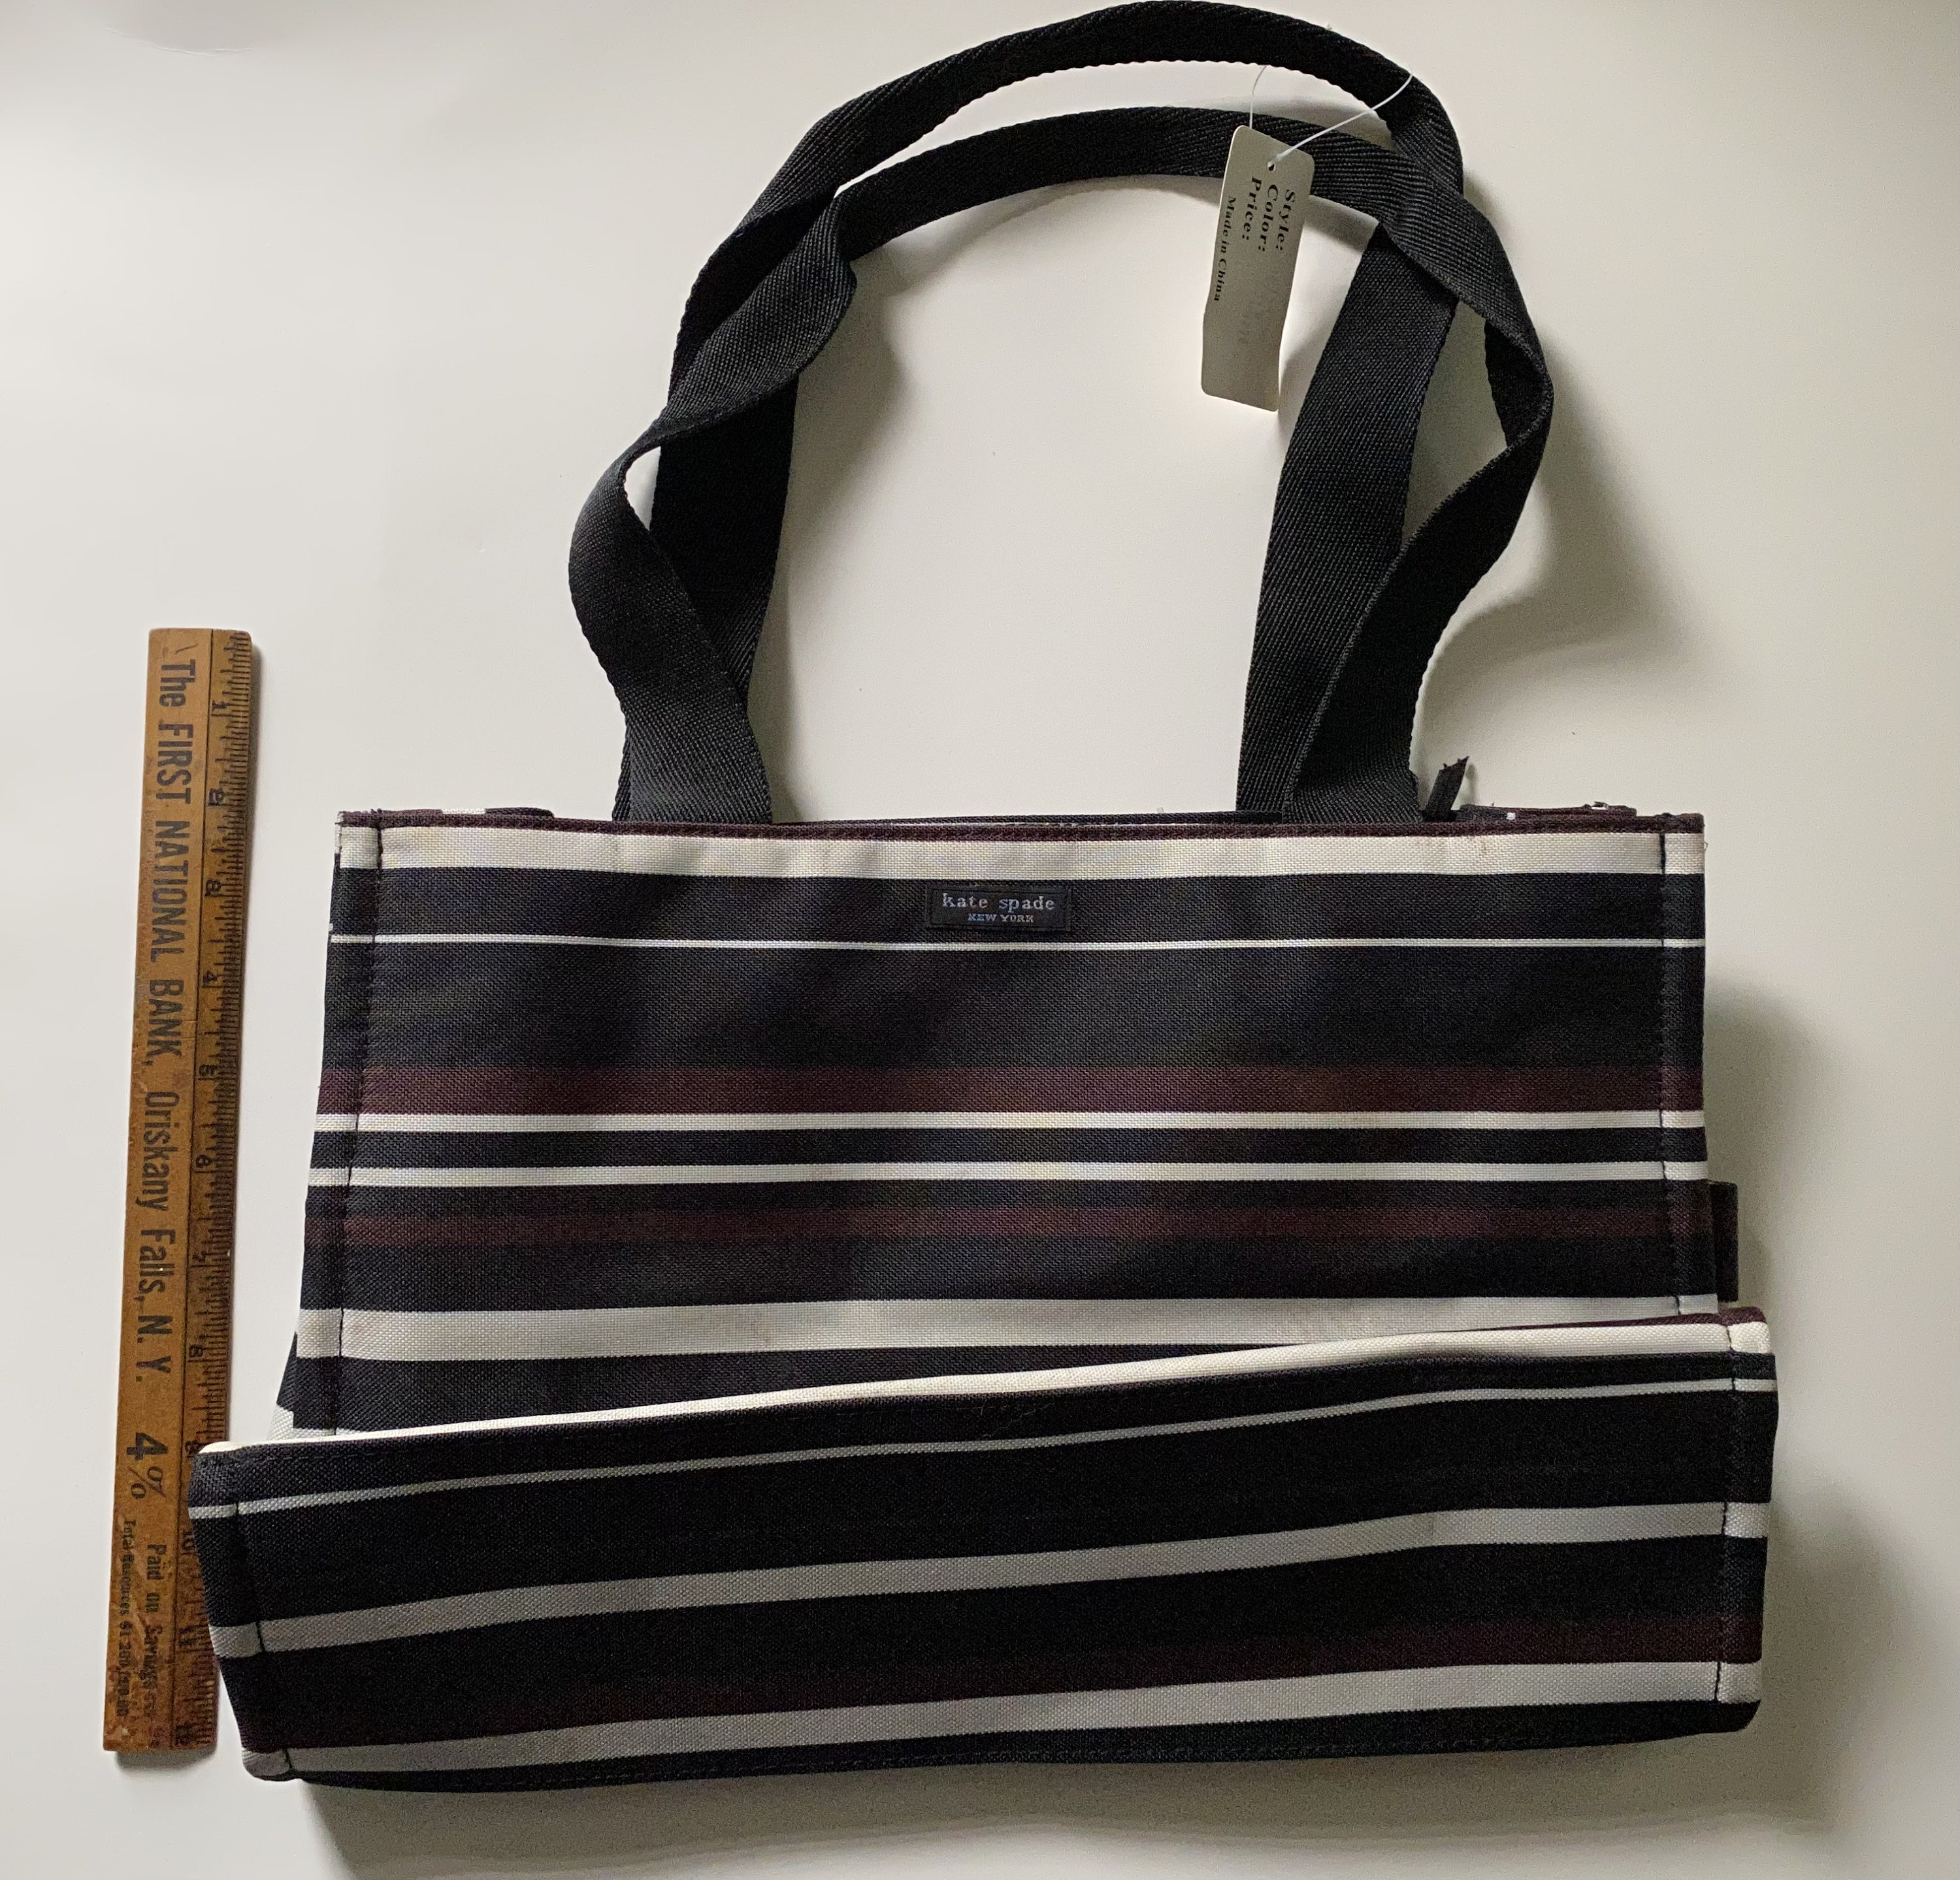 Designer Kate Spade Black Satin Patent Trim Shoulder Bag - Ruby Lane